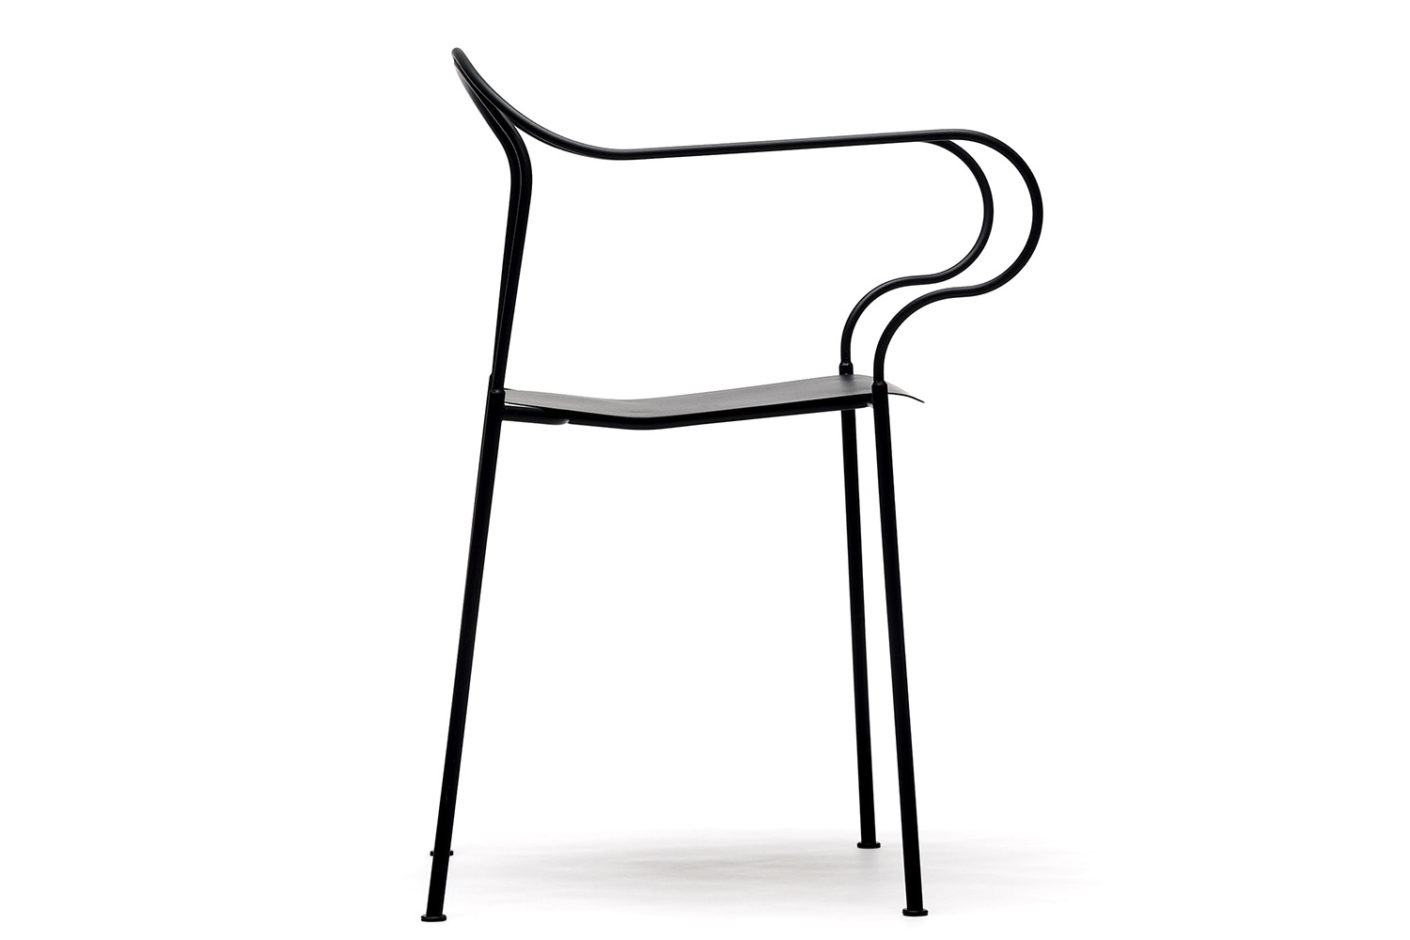 Kyparn stol, design Johannes Norlander